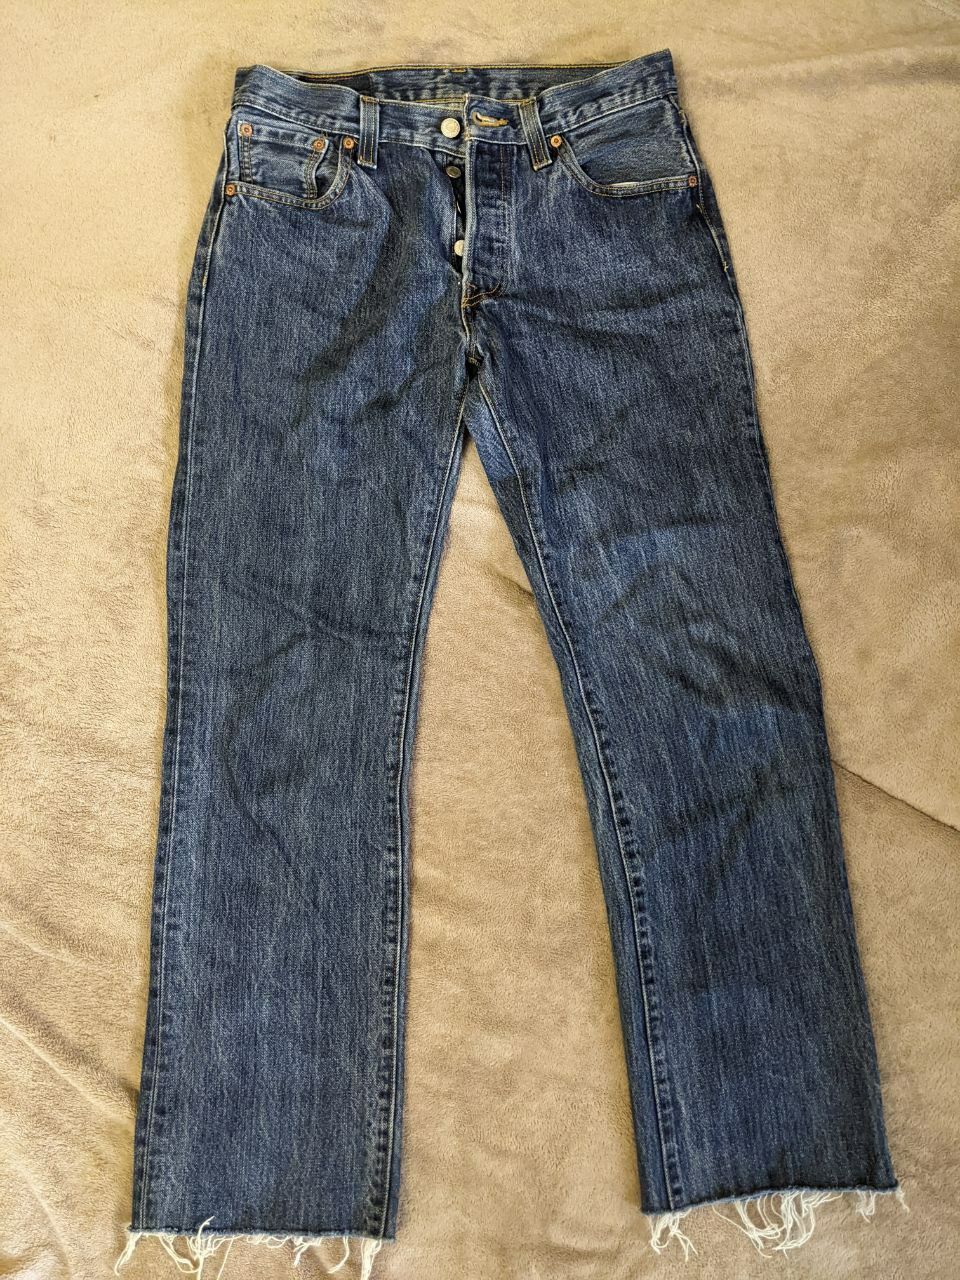 Продам мужские джинсы Levis 501 30/30